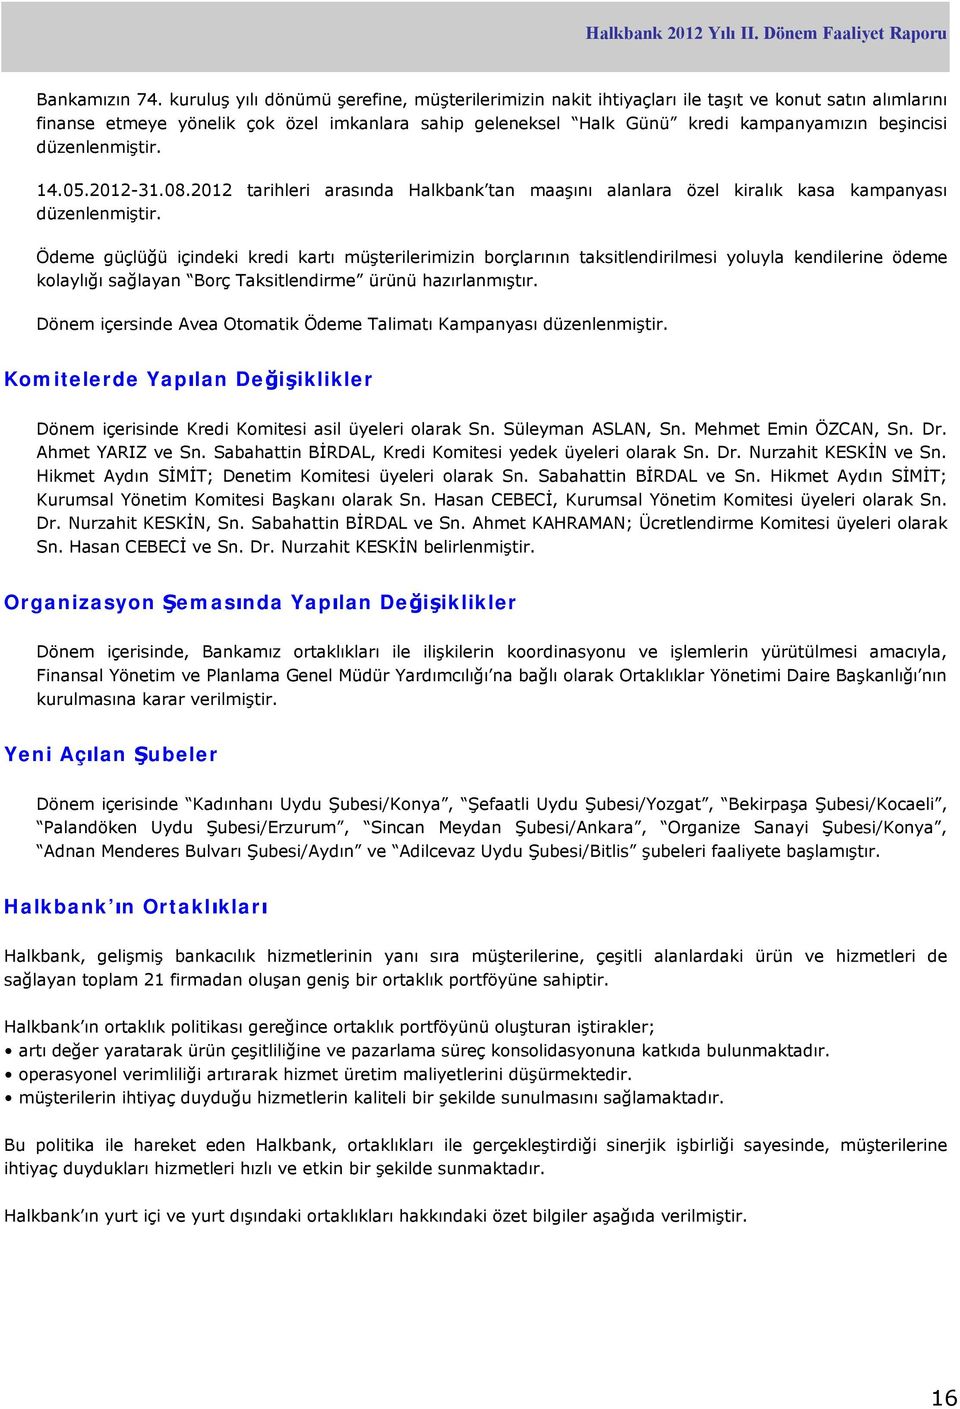 düzenlenmiştir. 14.05.2012-31.08.2012 tarihleri arasında Halkbank tan maaşını alanlara özel kiralık kasa kampanyası düzenlenmiştir.